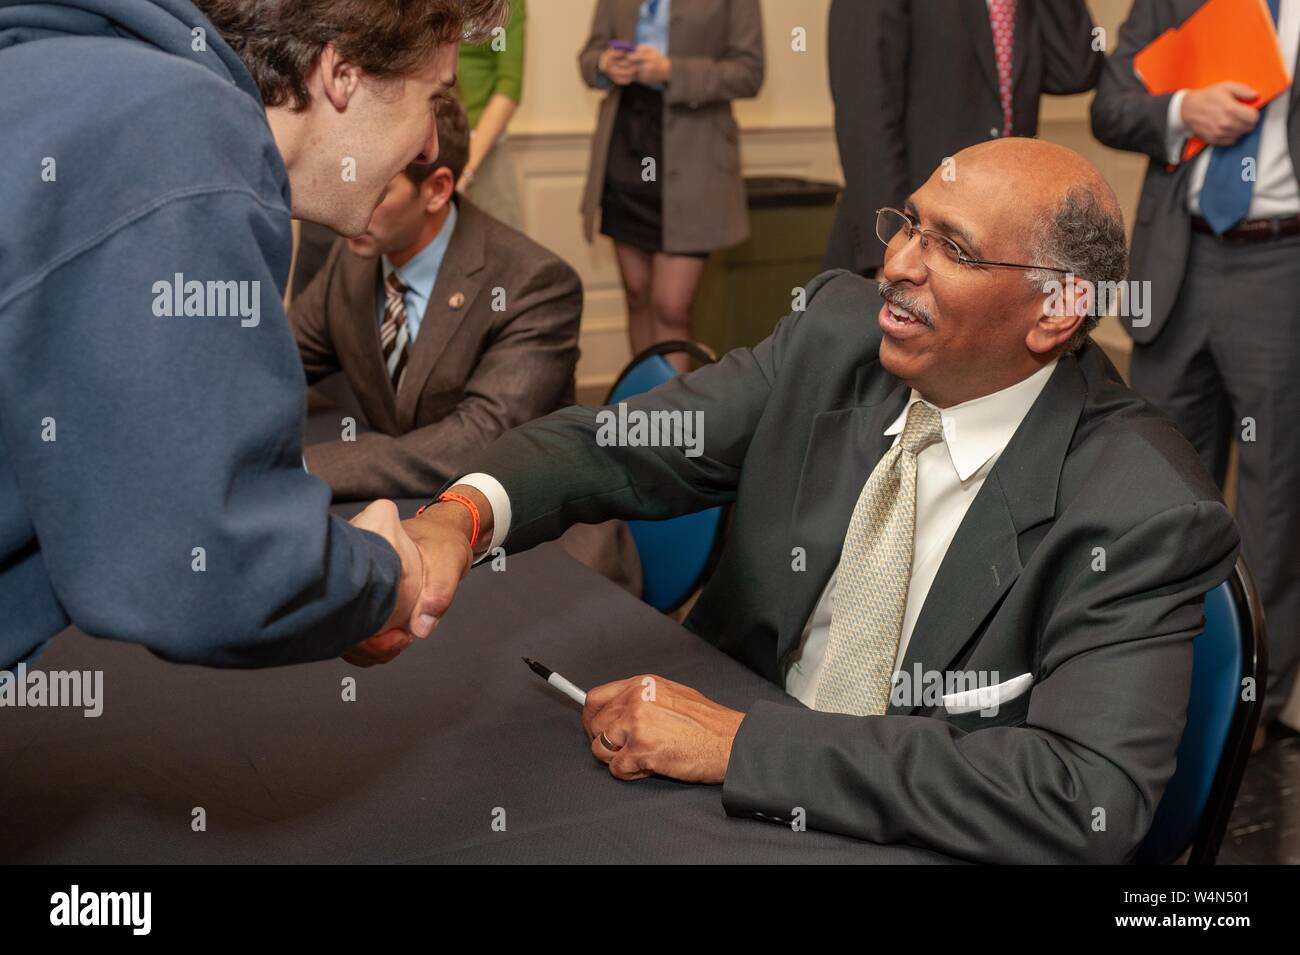 Ancien politicien Michael Steele, serrant la main d'un membre de l'auditoire, à la suite d'un Symposium des affaires étrangères à l'Université Johns Hopkins University, Baltimore, Maryland, le 5 novembre 2009. À partir de la collection photographique de Homewood. () Banque D'Images